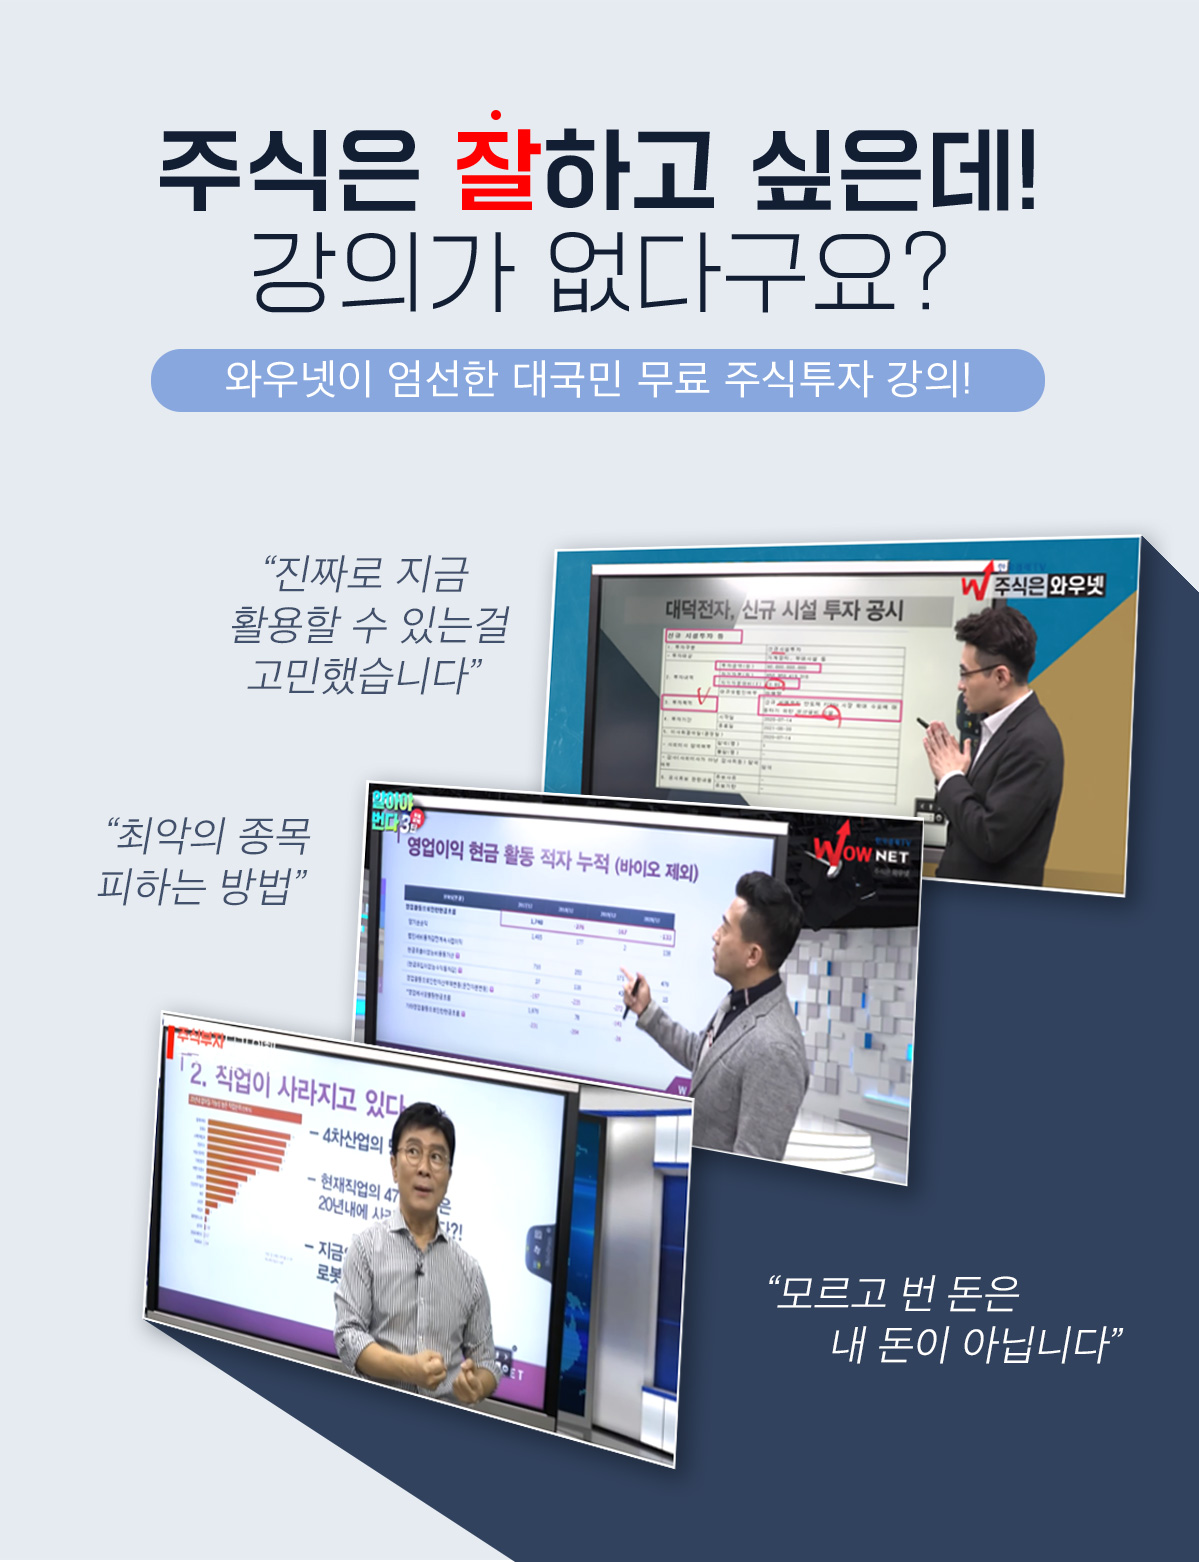 한국경제Tv 와우넷 대국민 주식투자 알아야번다 | 주식은 와우넷